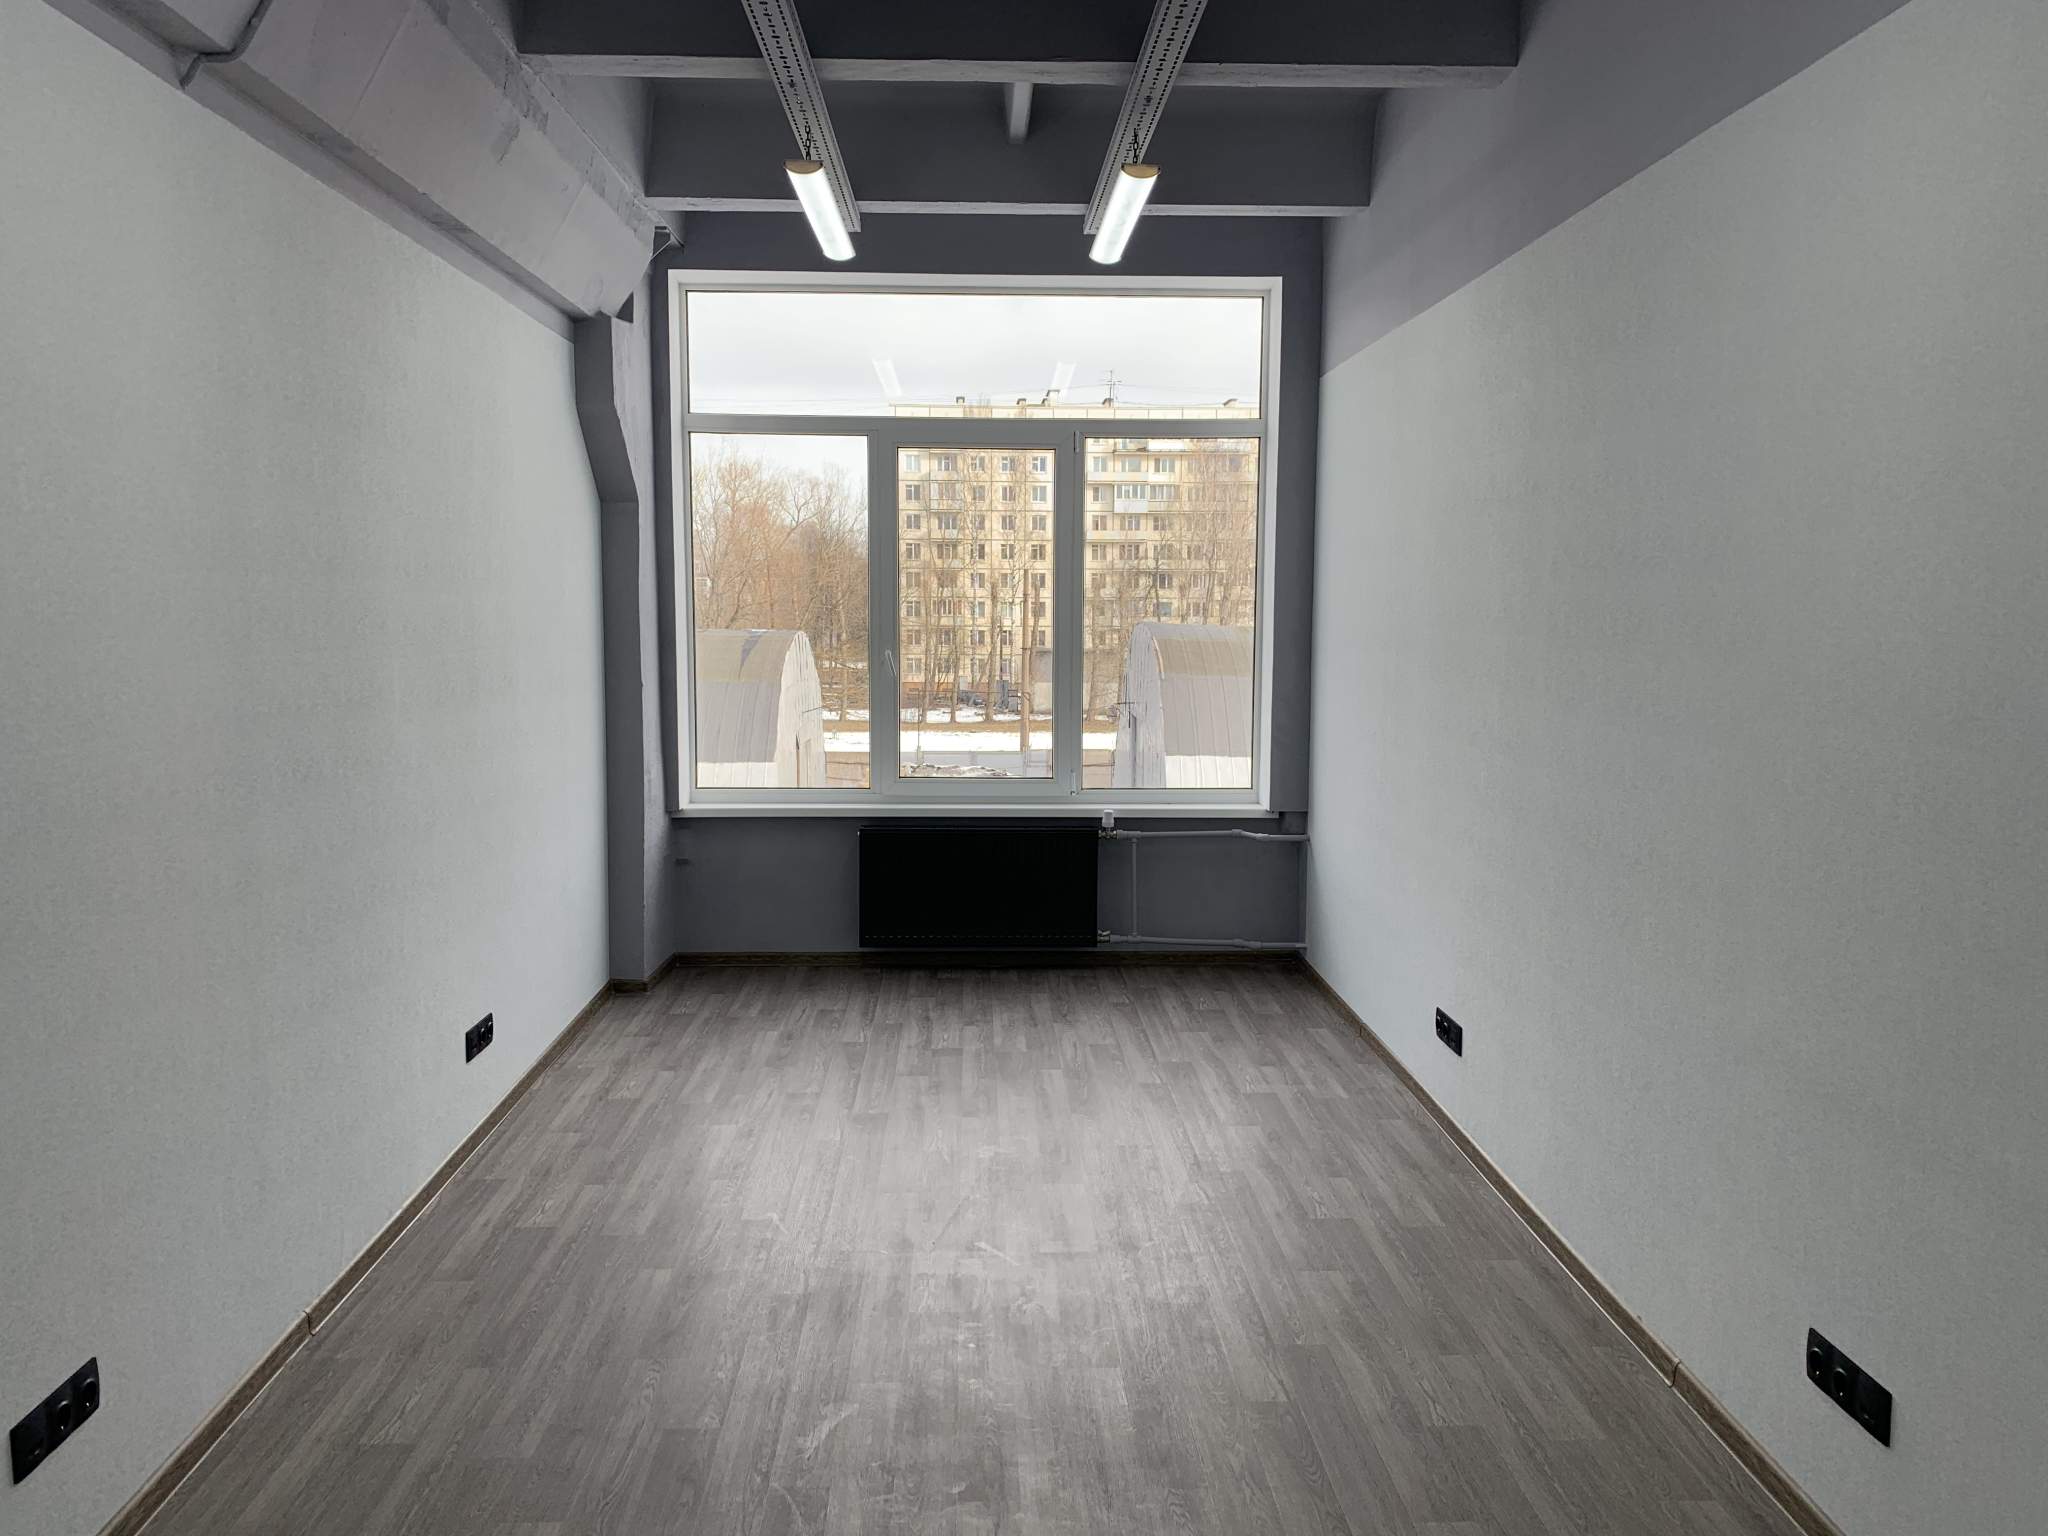 Аренда помещения в года наличие. Офис без мебели. Помещение 15 м2. Помещение 15 кв метров. Пустое помещение под офис.